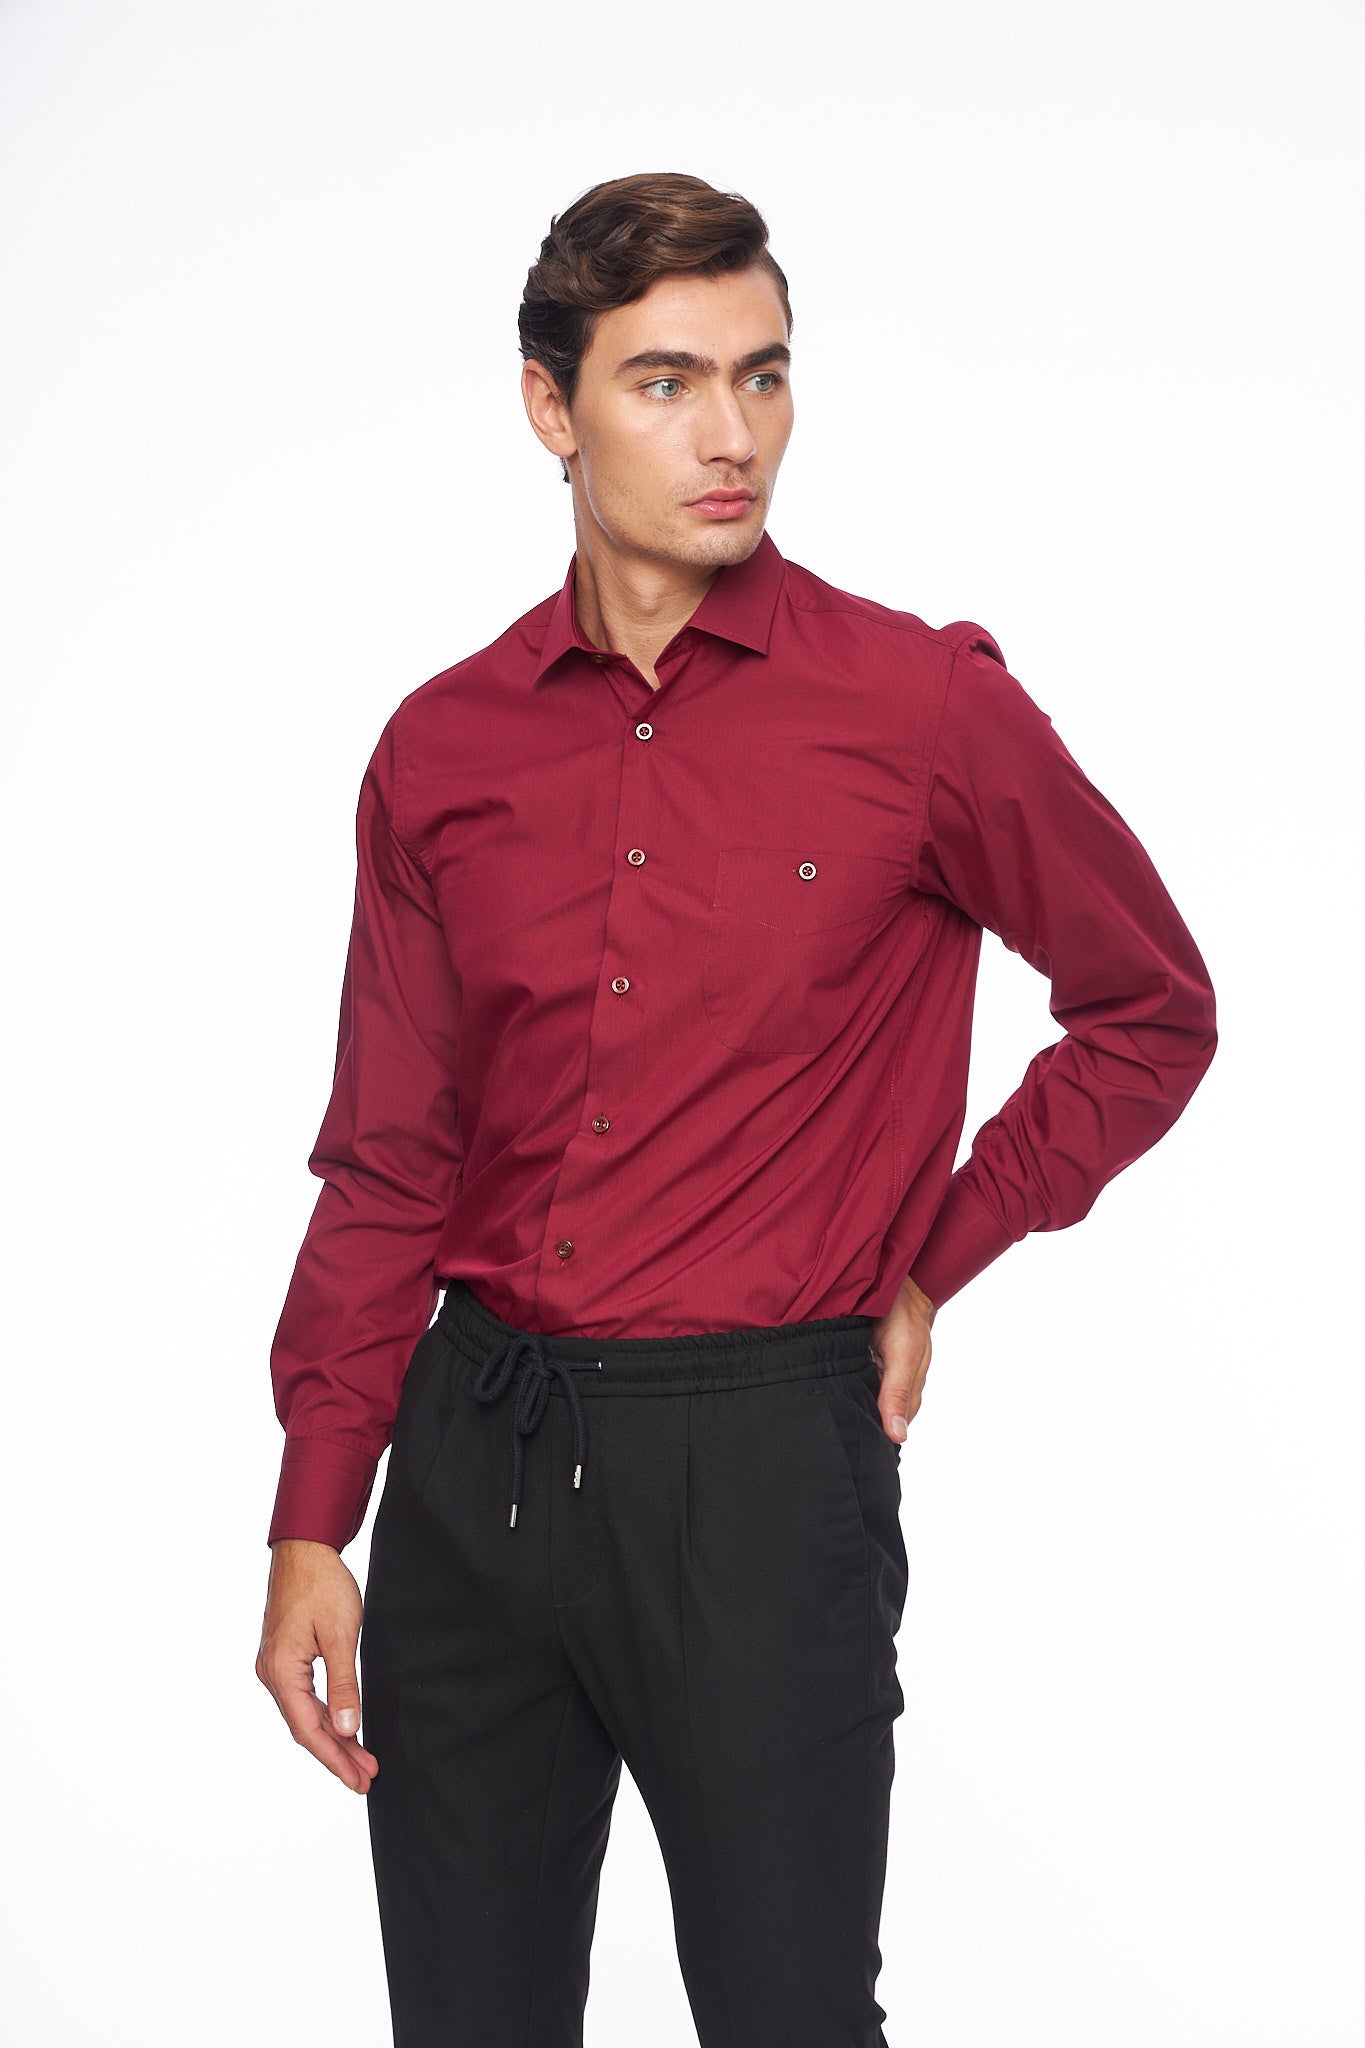 Мъжка бордо риза с дълъг ръкав, права конструкция, джоб на гърдите.